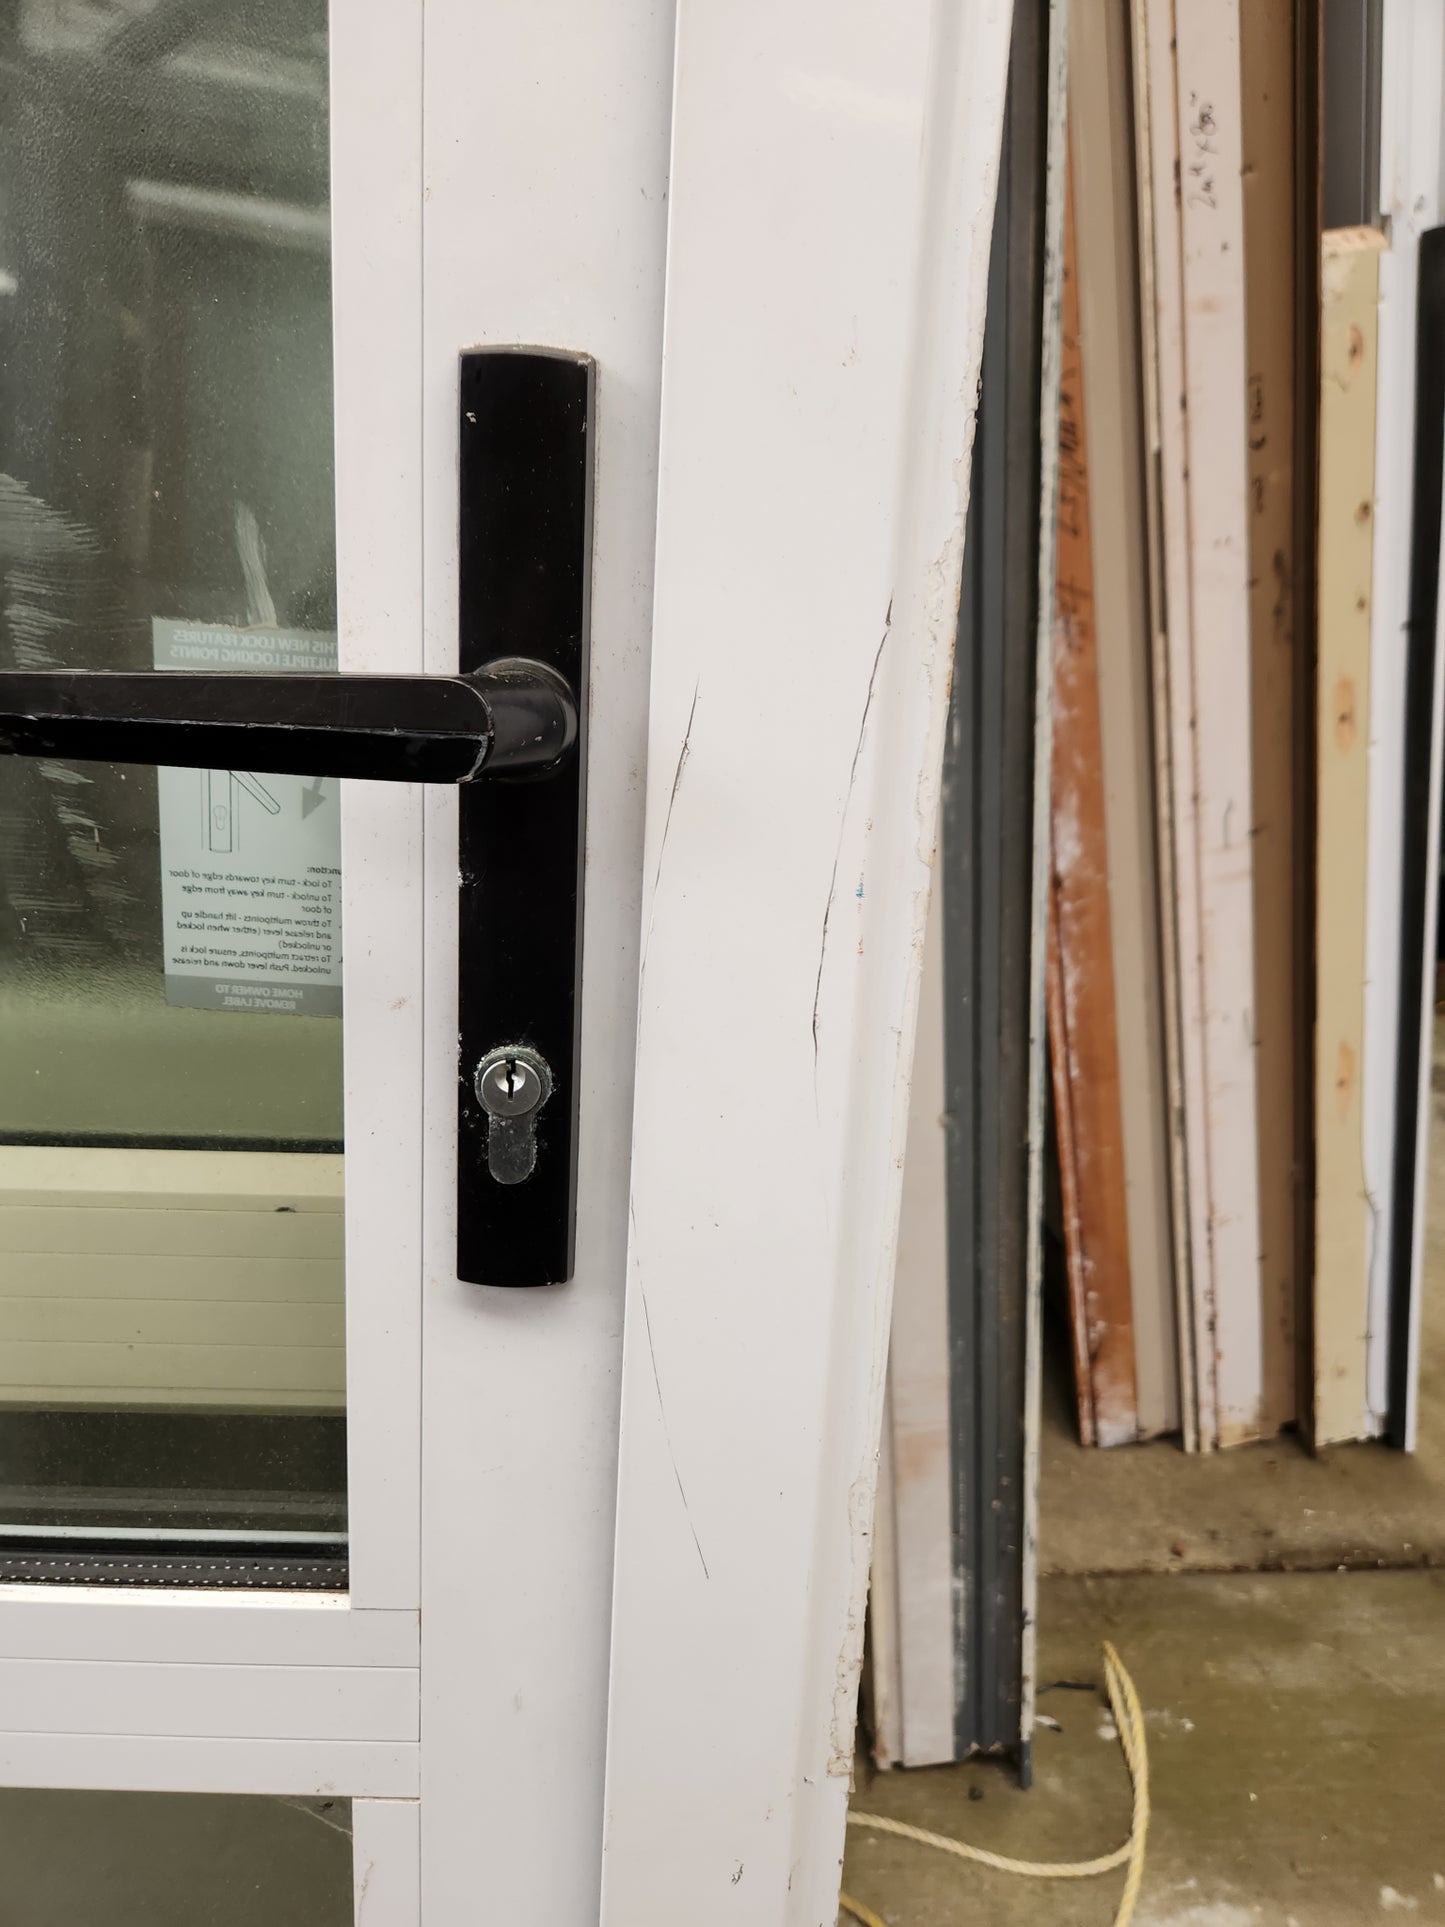 Double Glazed White Single Exterior Door 2000 H x 880 W #SDP2